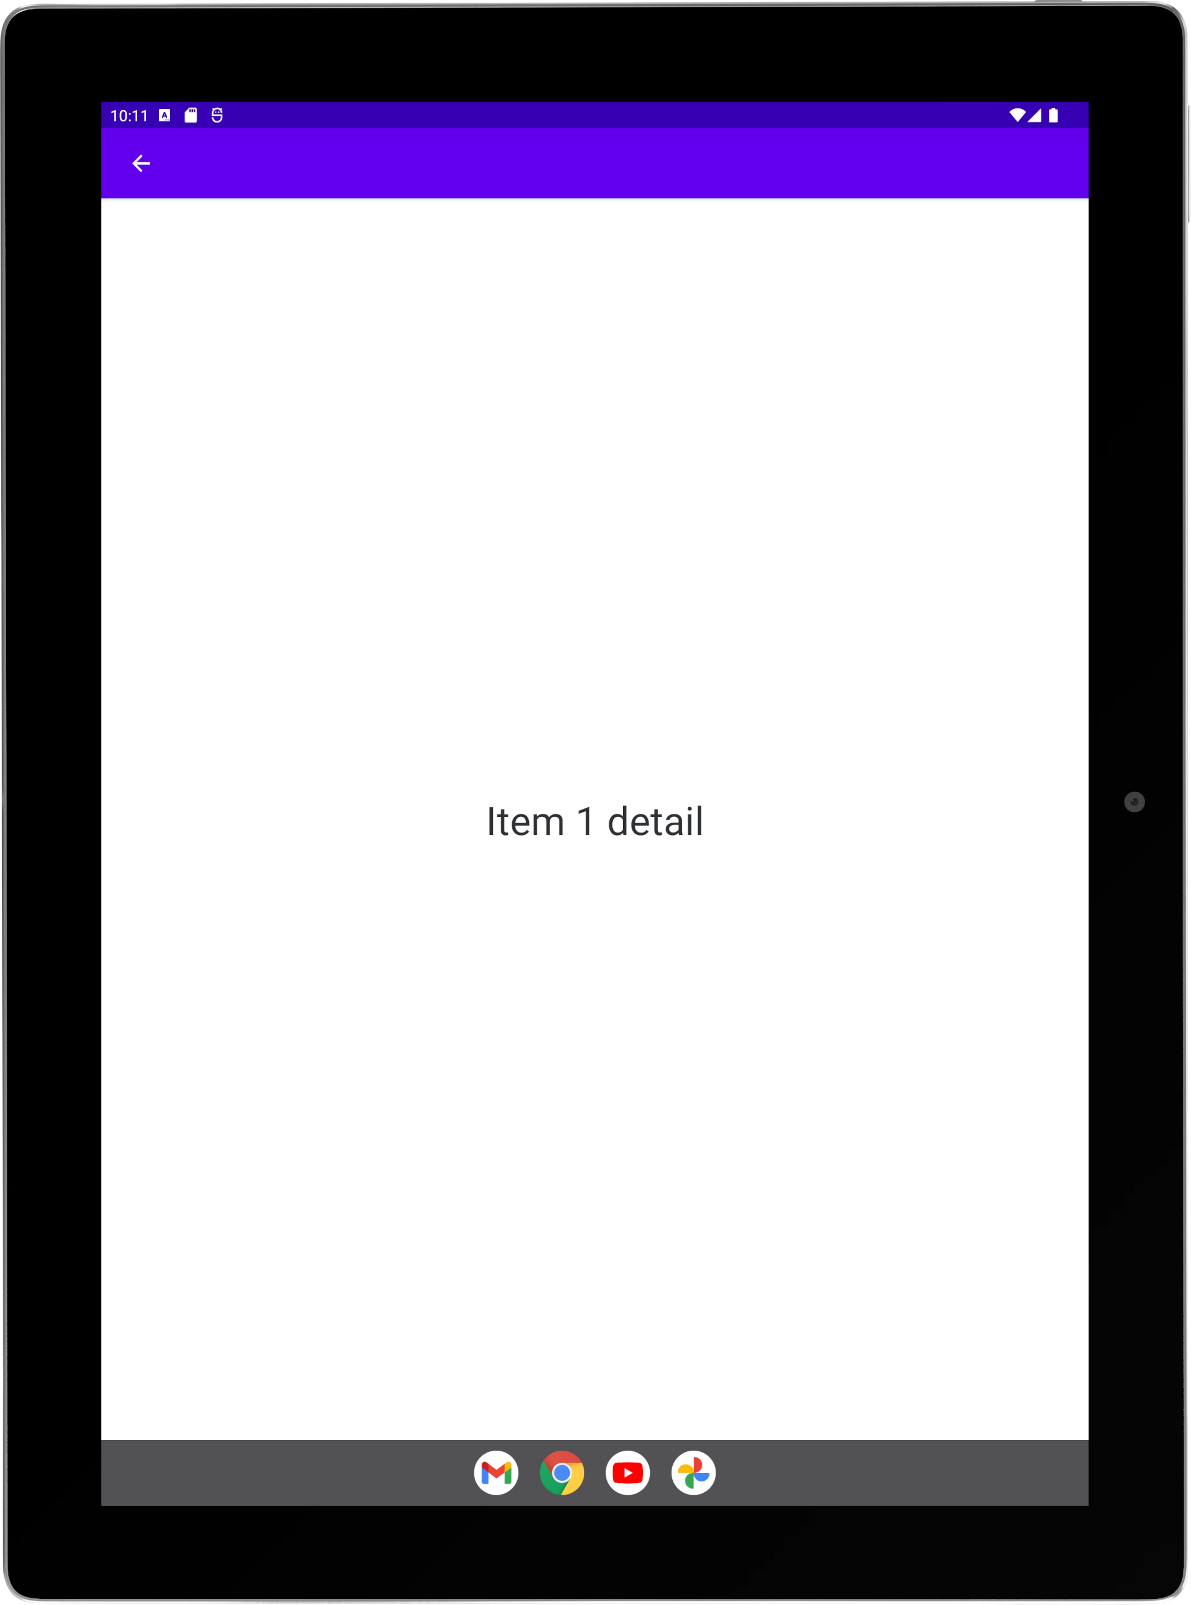 Grande tablette avec une application exemple exécutée en mode portrait Activité "Détail" en plein écran